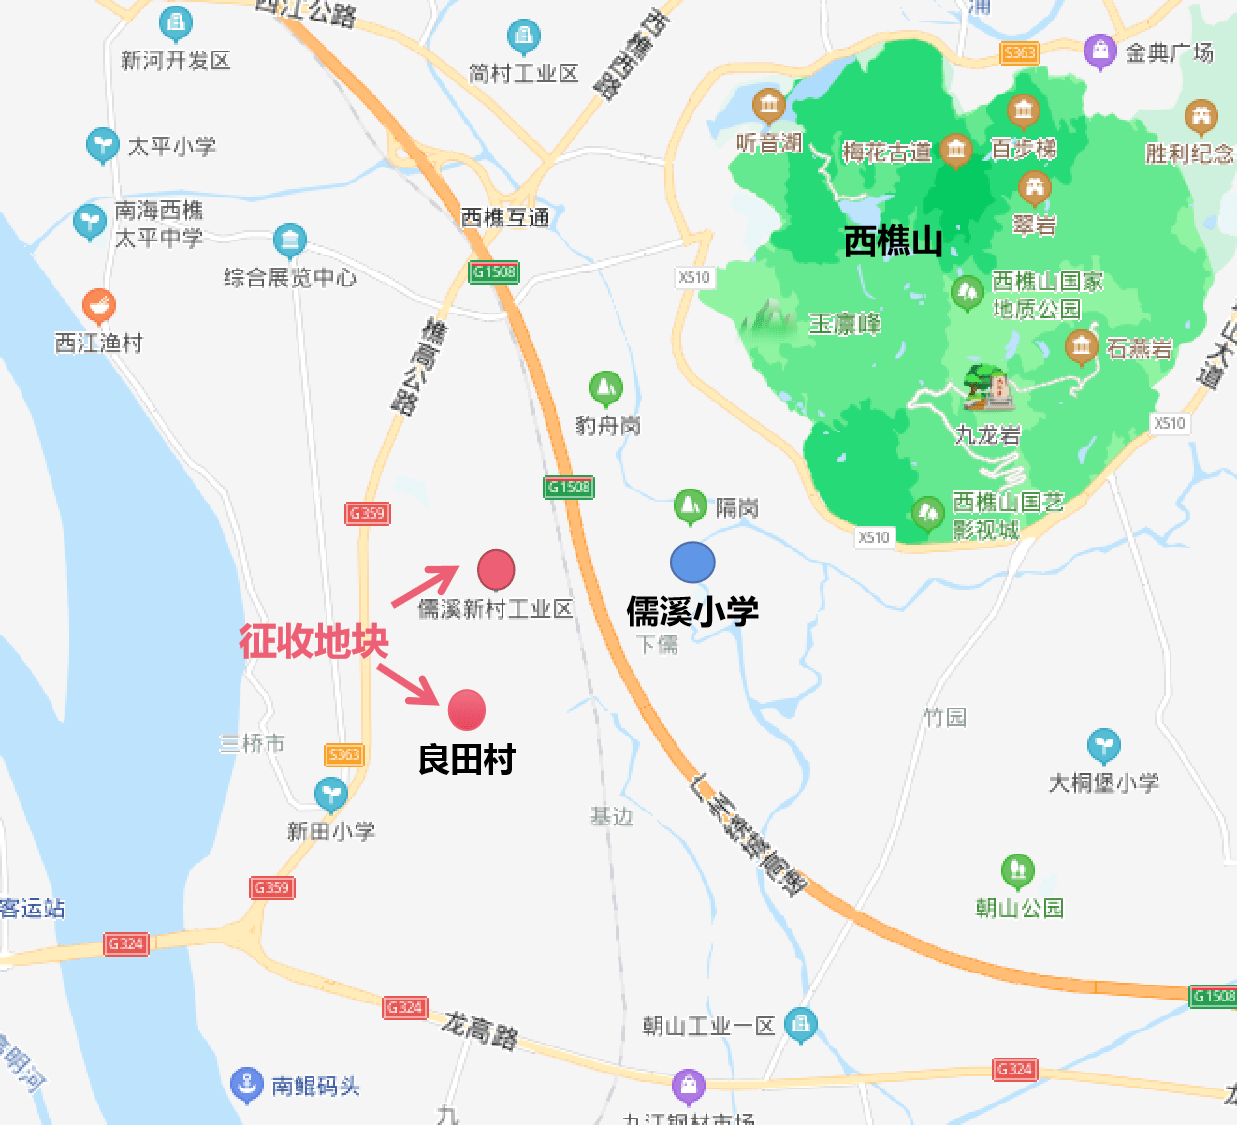 西樵镇社区划分地图图片